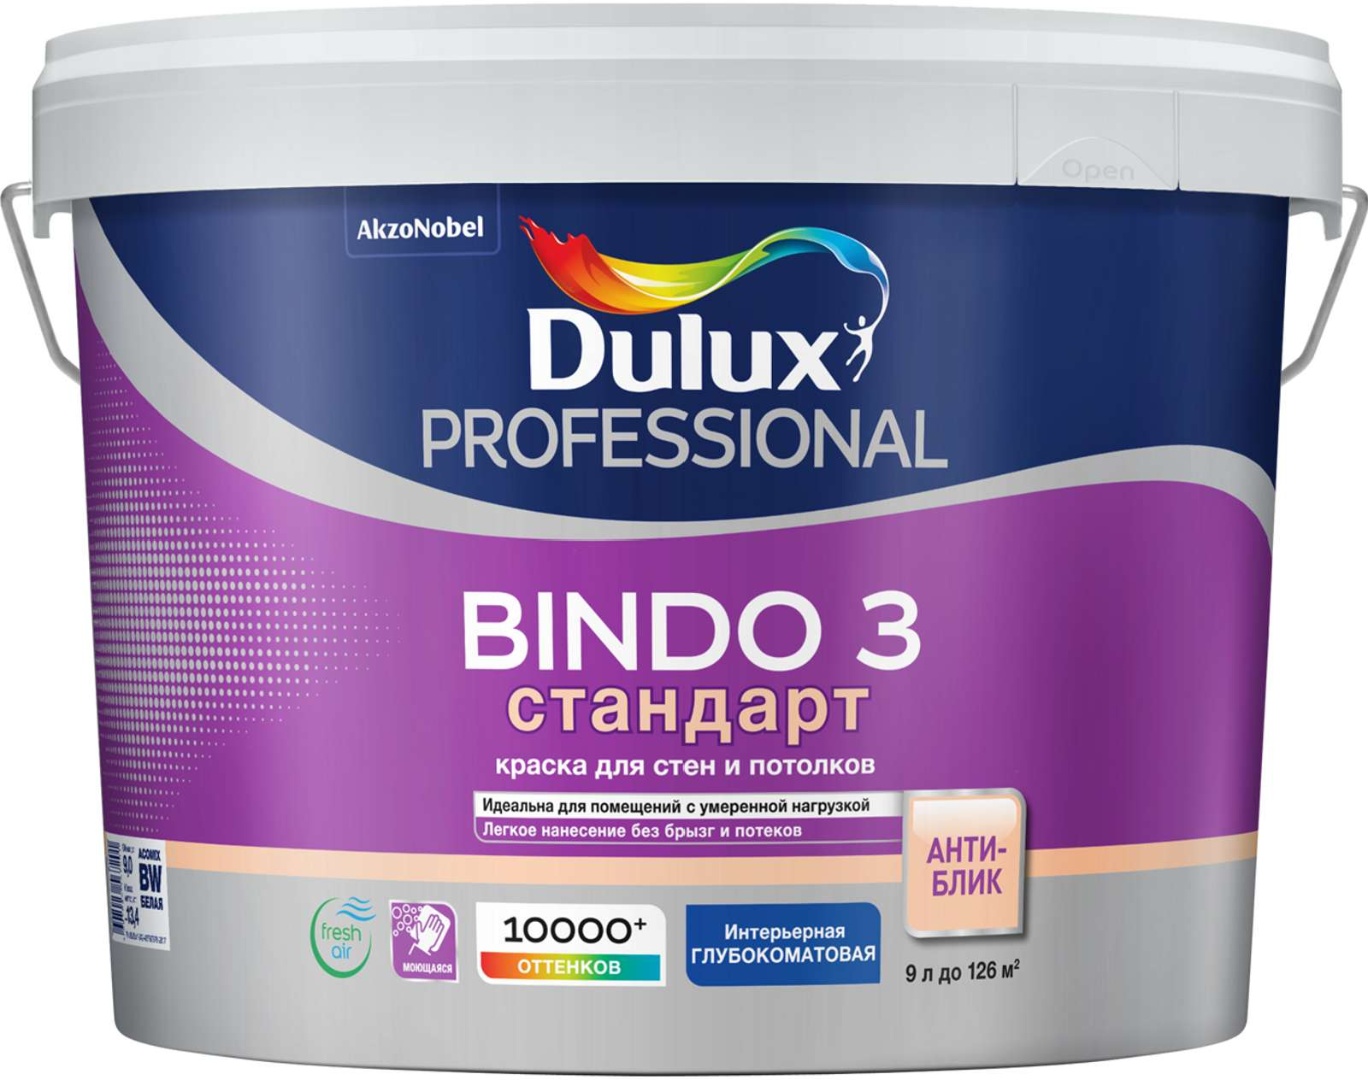 Купить Dulux professional bindo 3 матовая Bw 9 л, белый